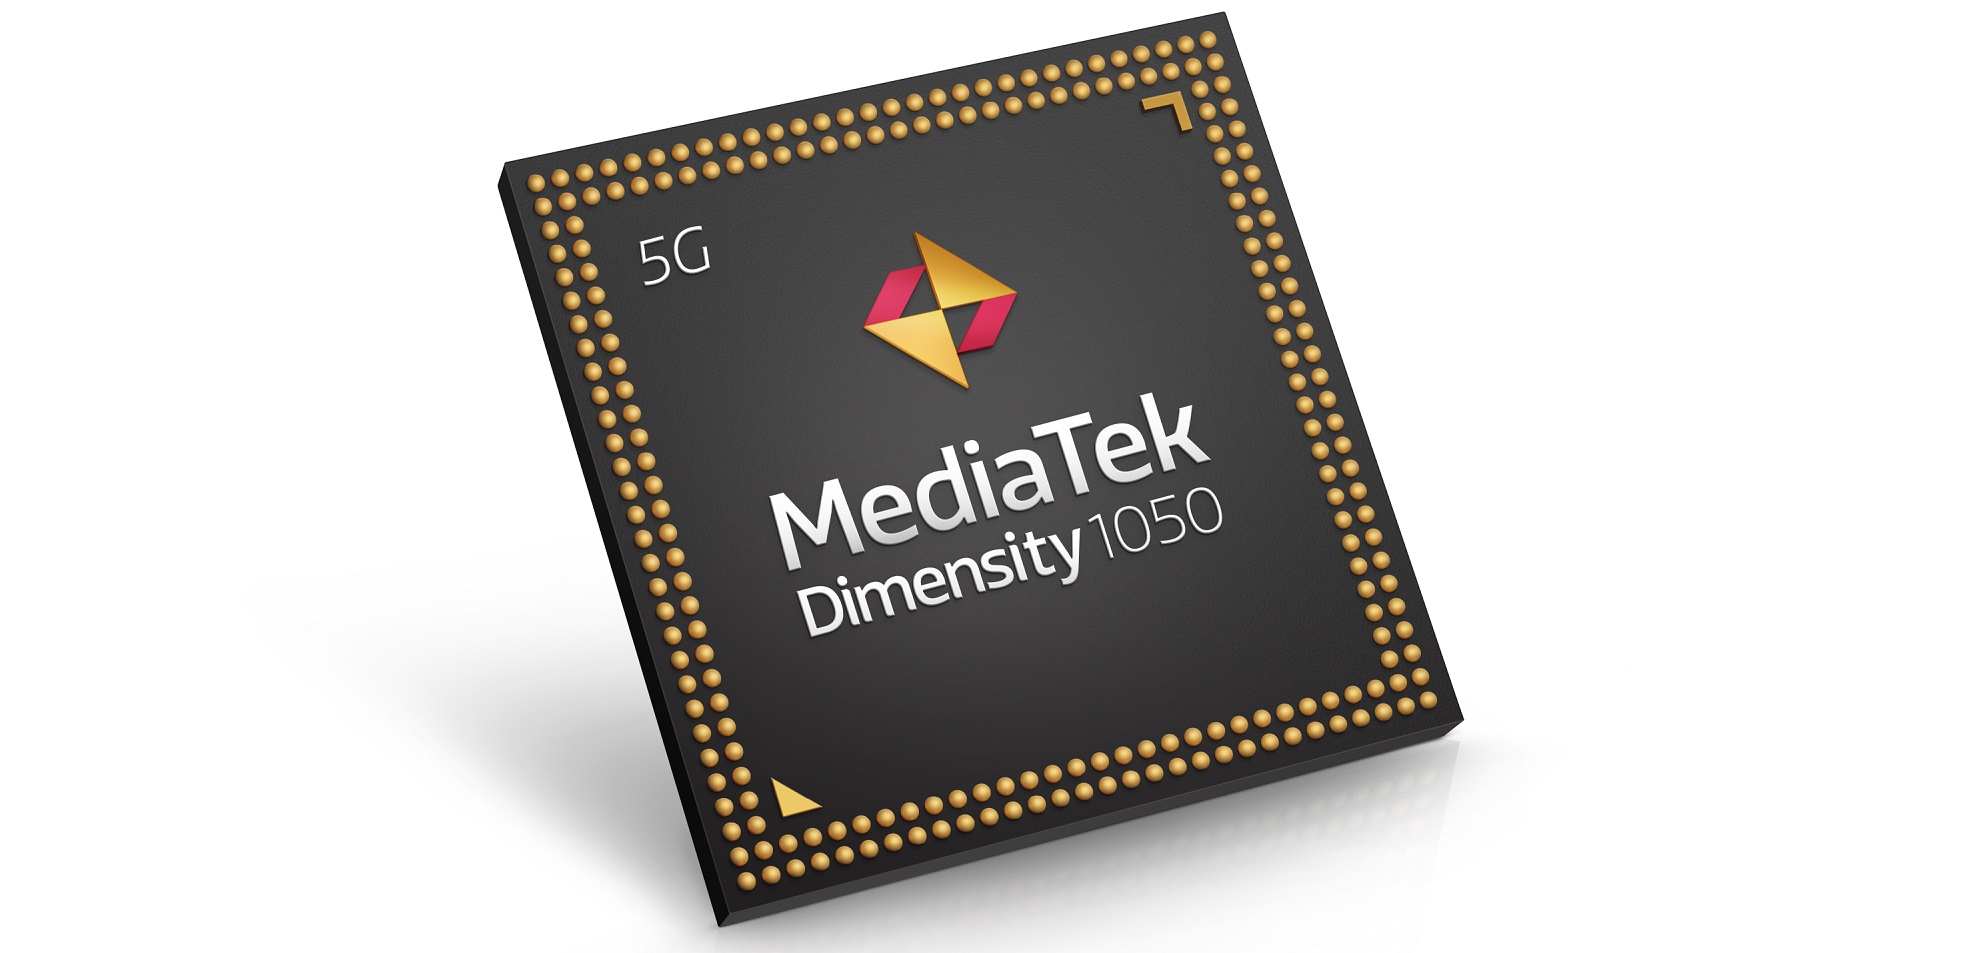 MediaTek lần đầu tiên ra mắt chipset dải tần mmWave hỗ trợ smartphone kết nối 5G liền mạch SoC mmWave Dimensity 1050 nổi bật trong bộ ba chipset mới mở rộng danh mục 5G và game của MediaTek